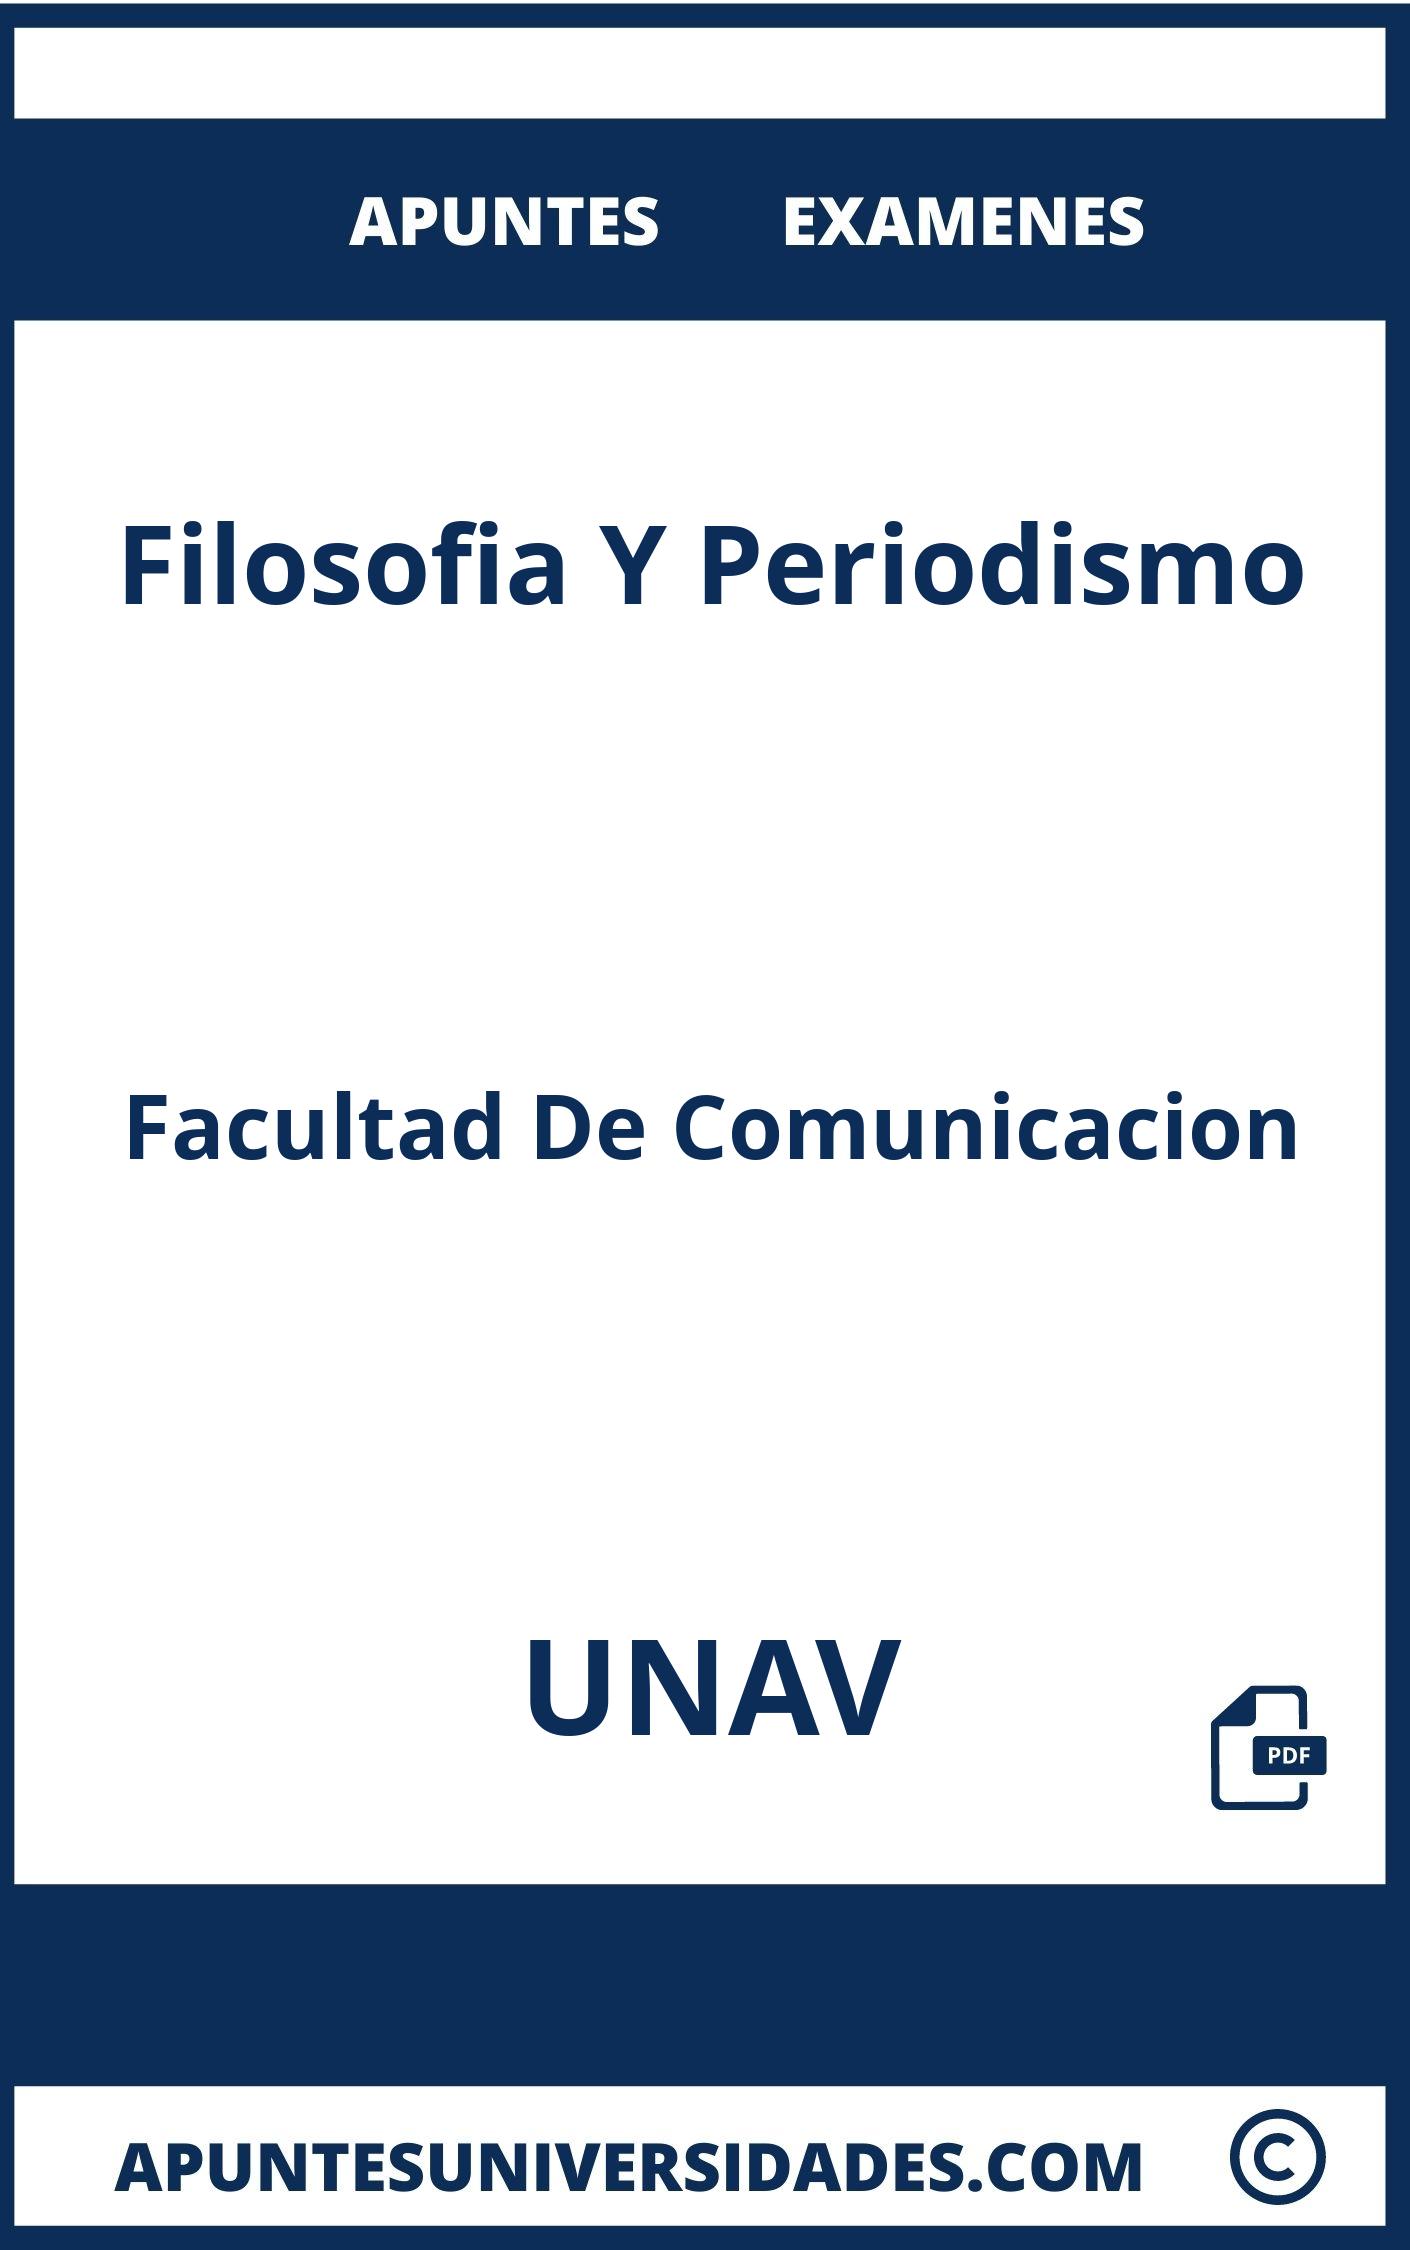 Apuntes y Examenes Filosofia Y Periodismo UNAV